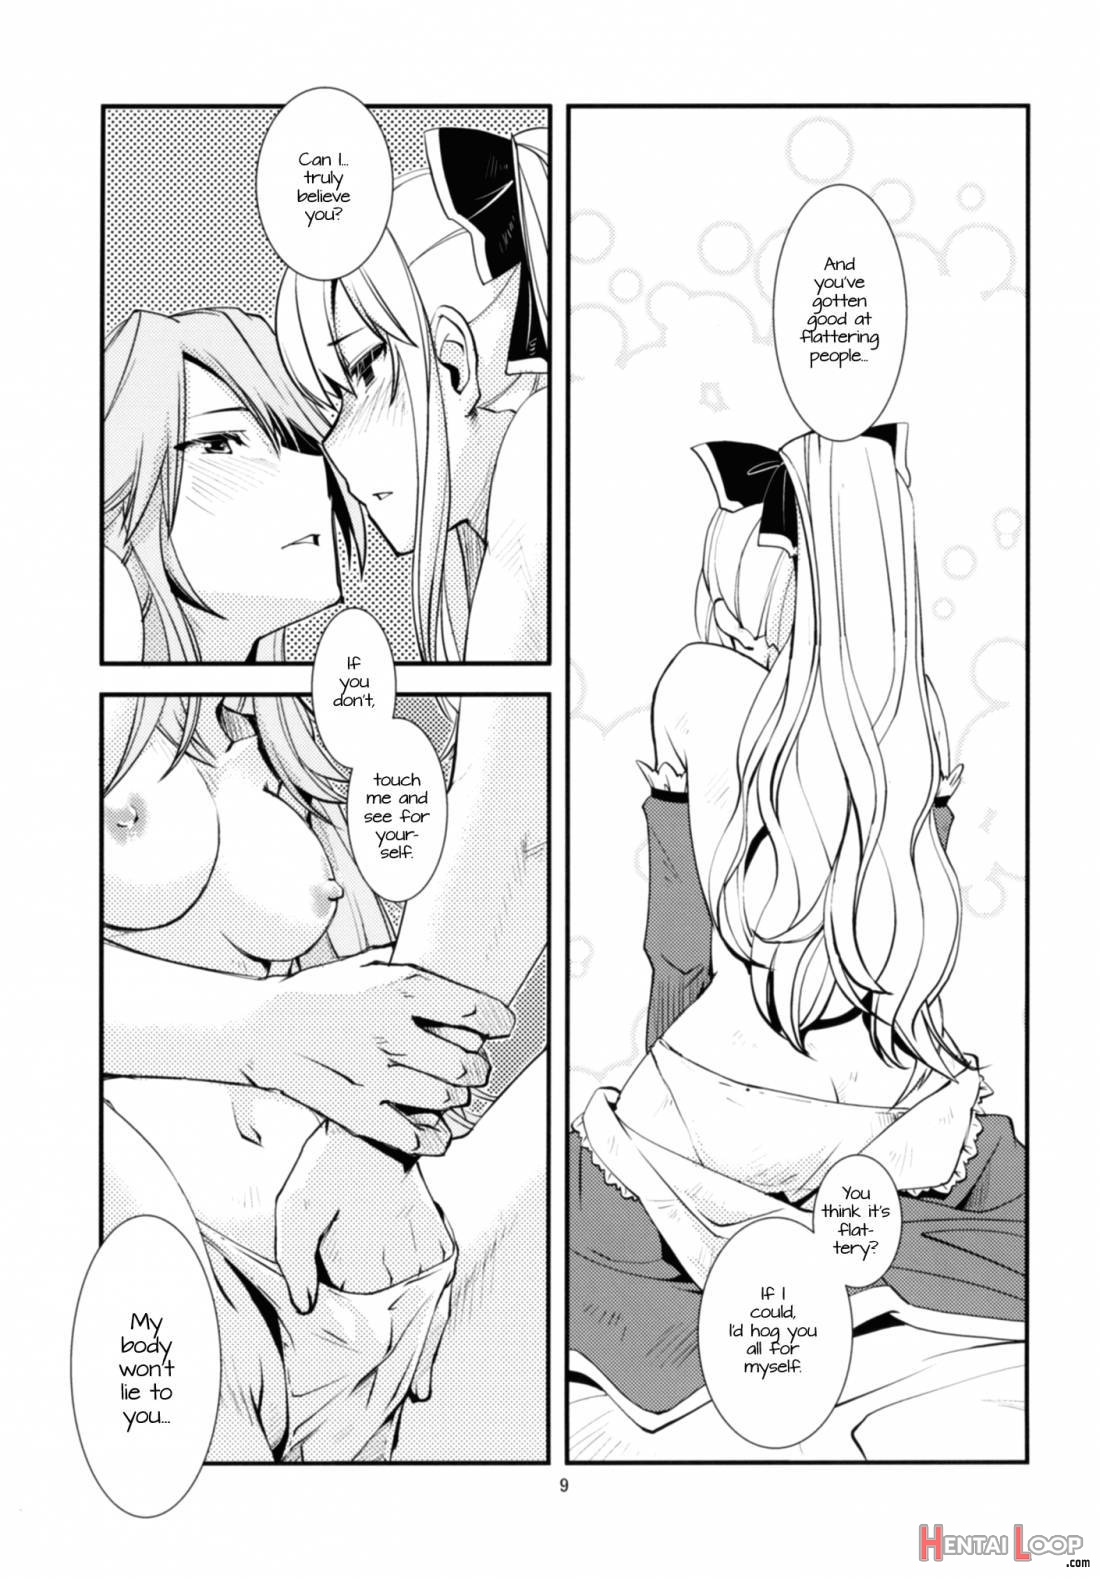 Deguchinashi page 10